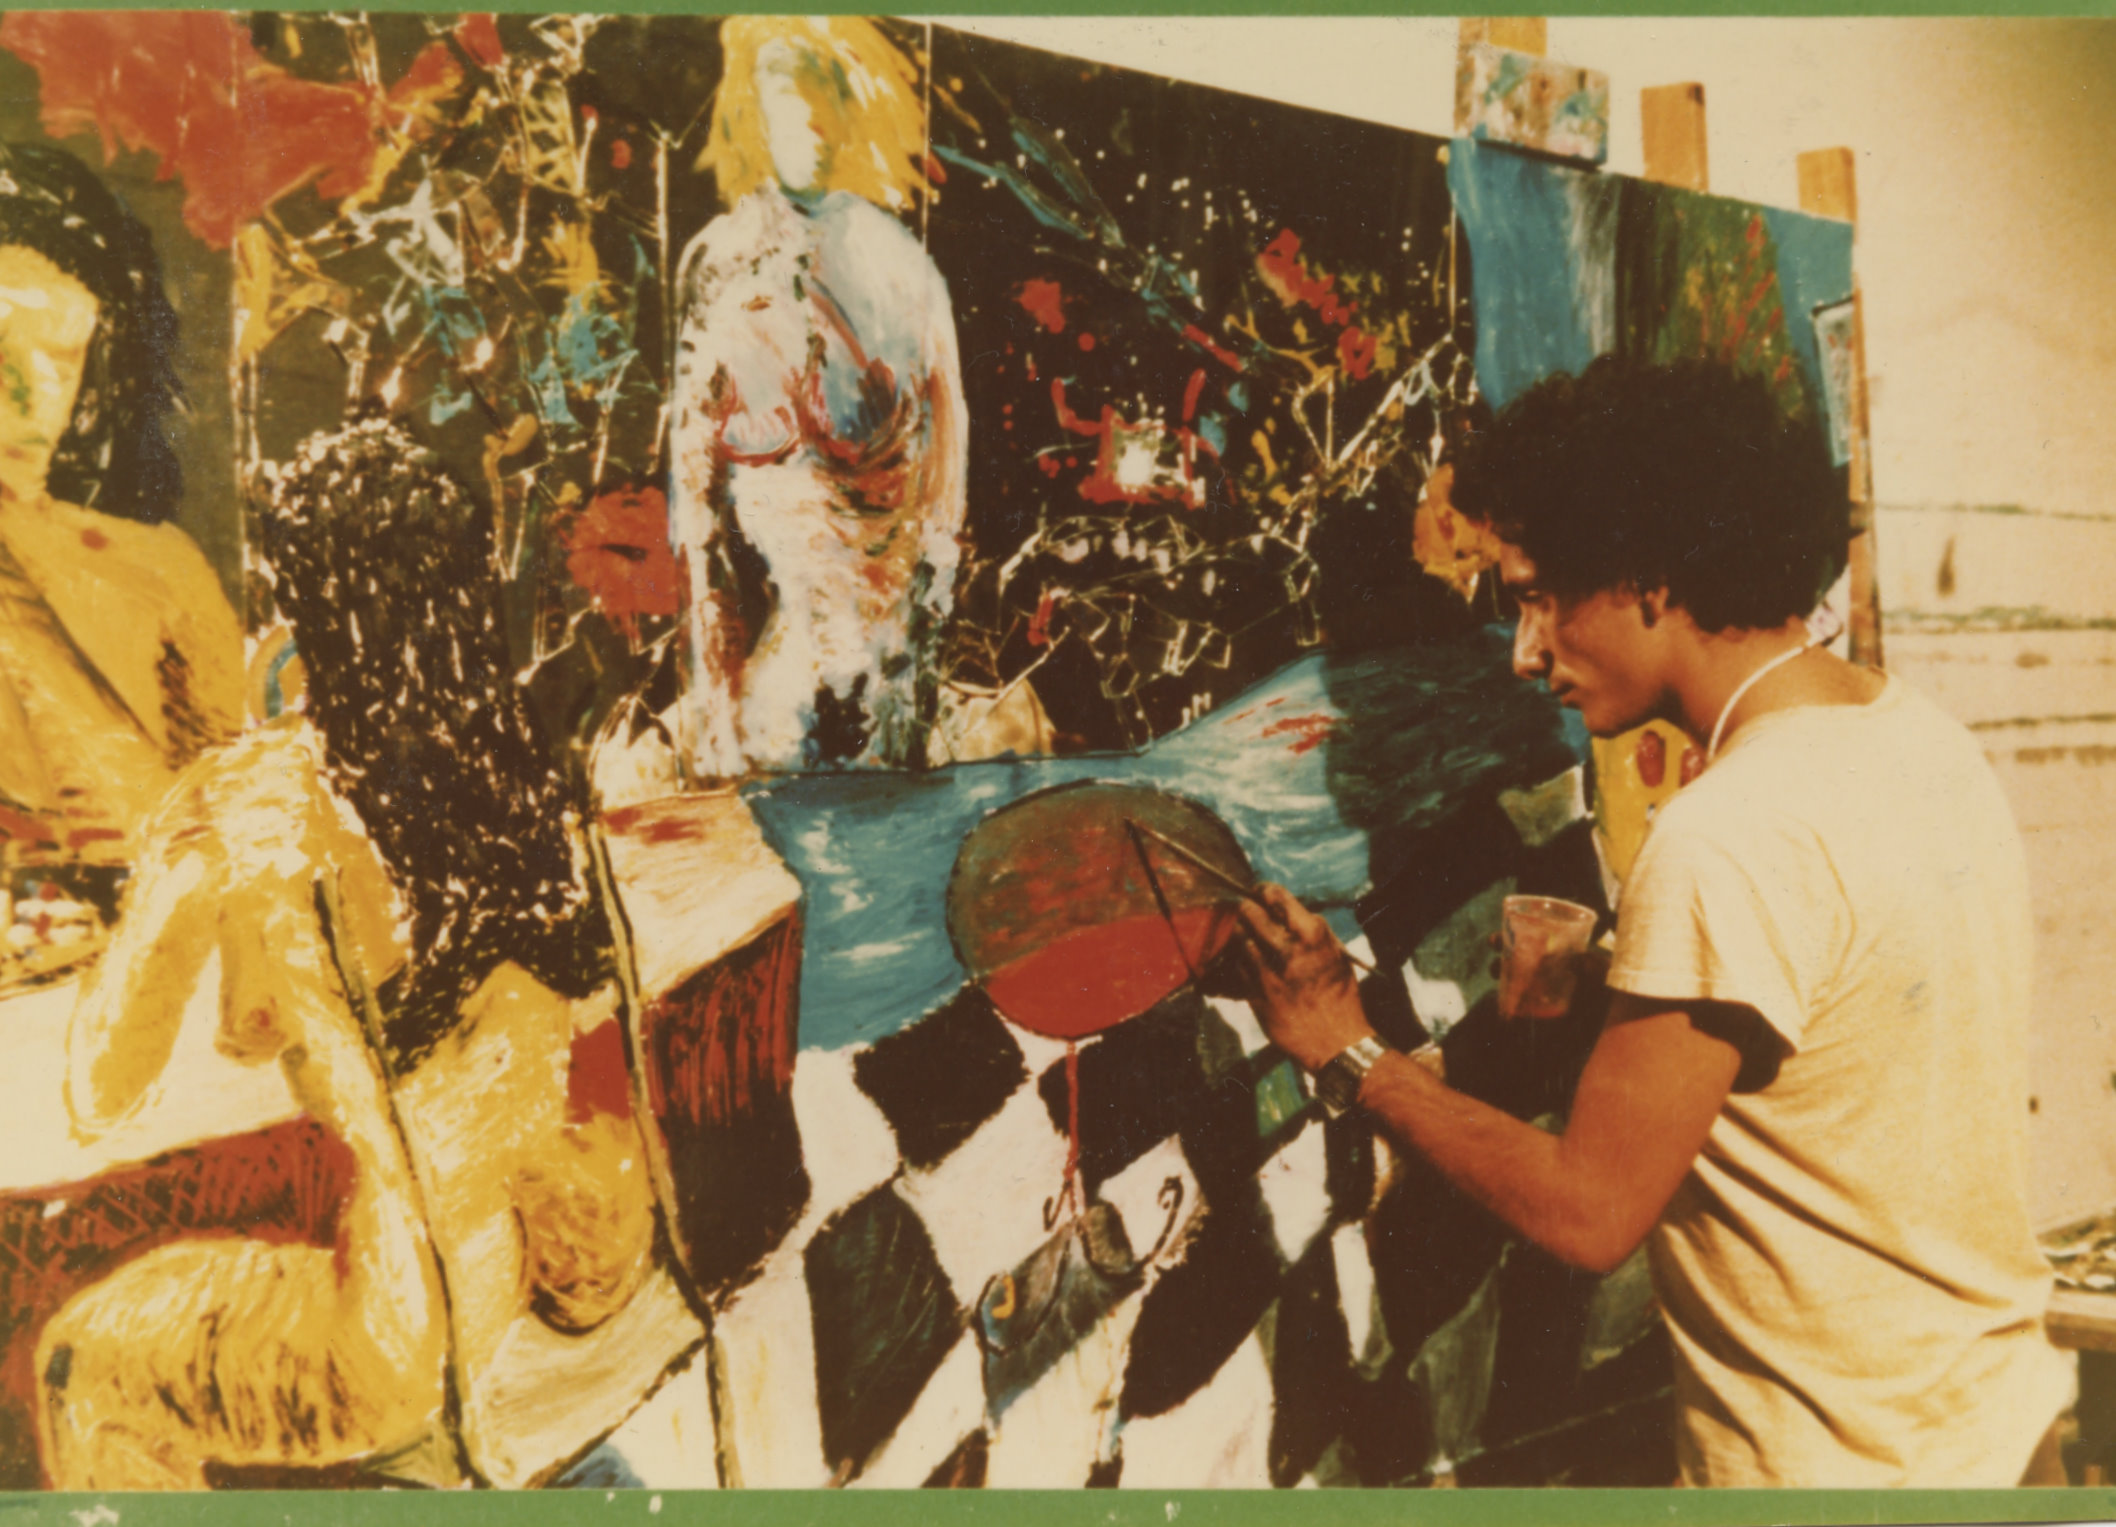 l'immagine mostra l'artista Bedri Baykam intento a dipingere. L'artista si trova nella parte destra della foto mentre il lato opposto è occupato dalla grande tela a cui sta lavorando